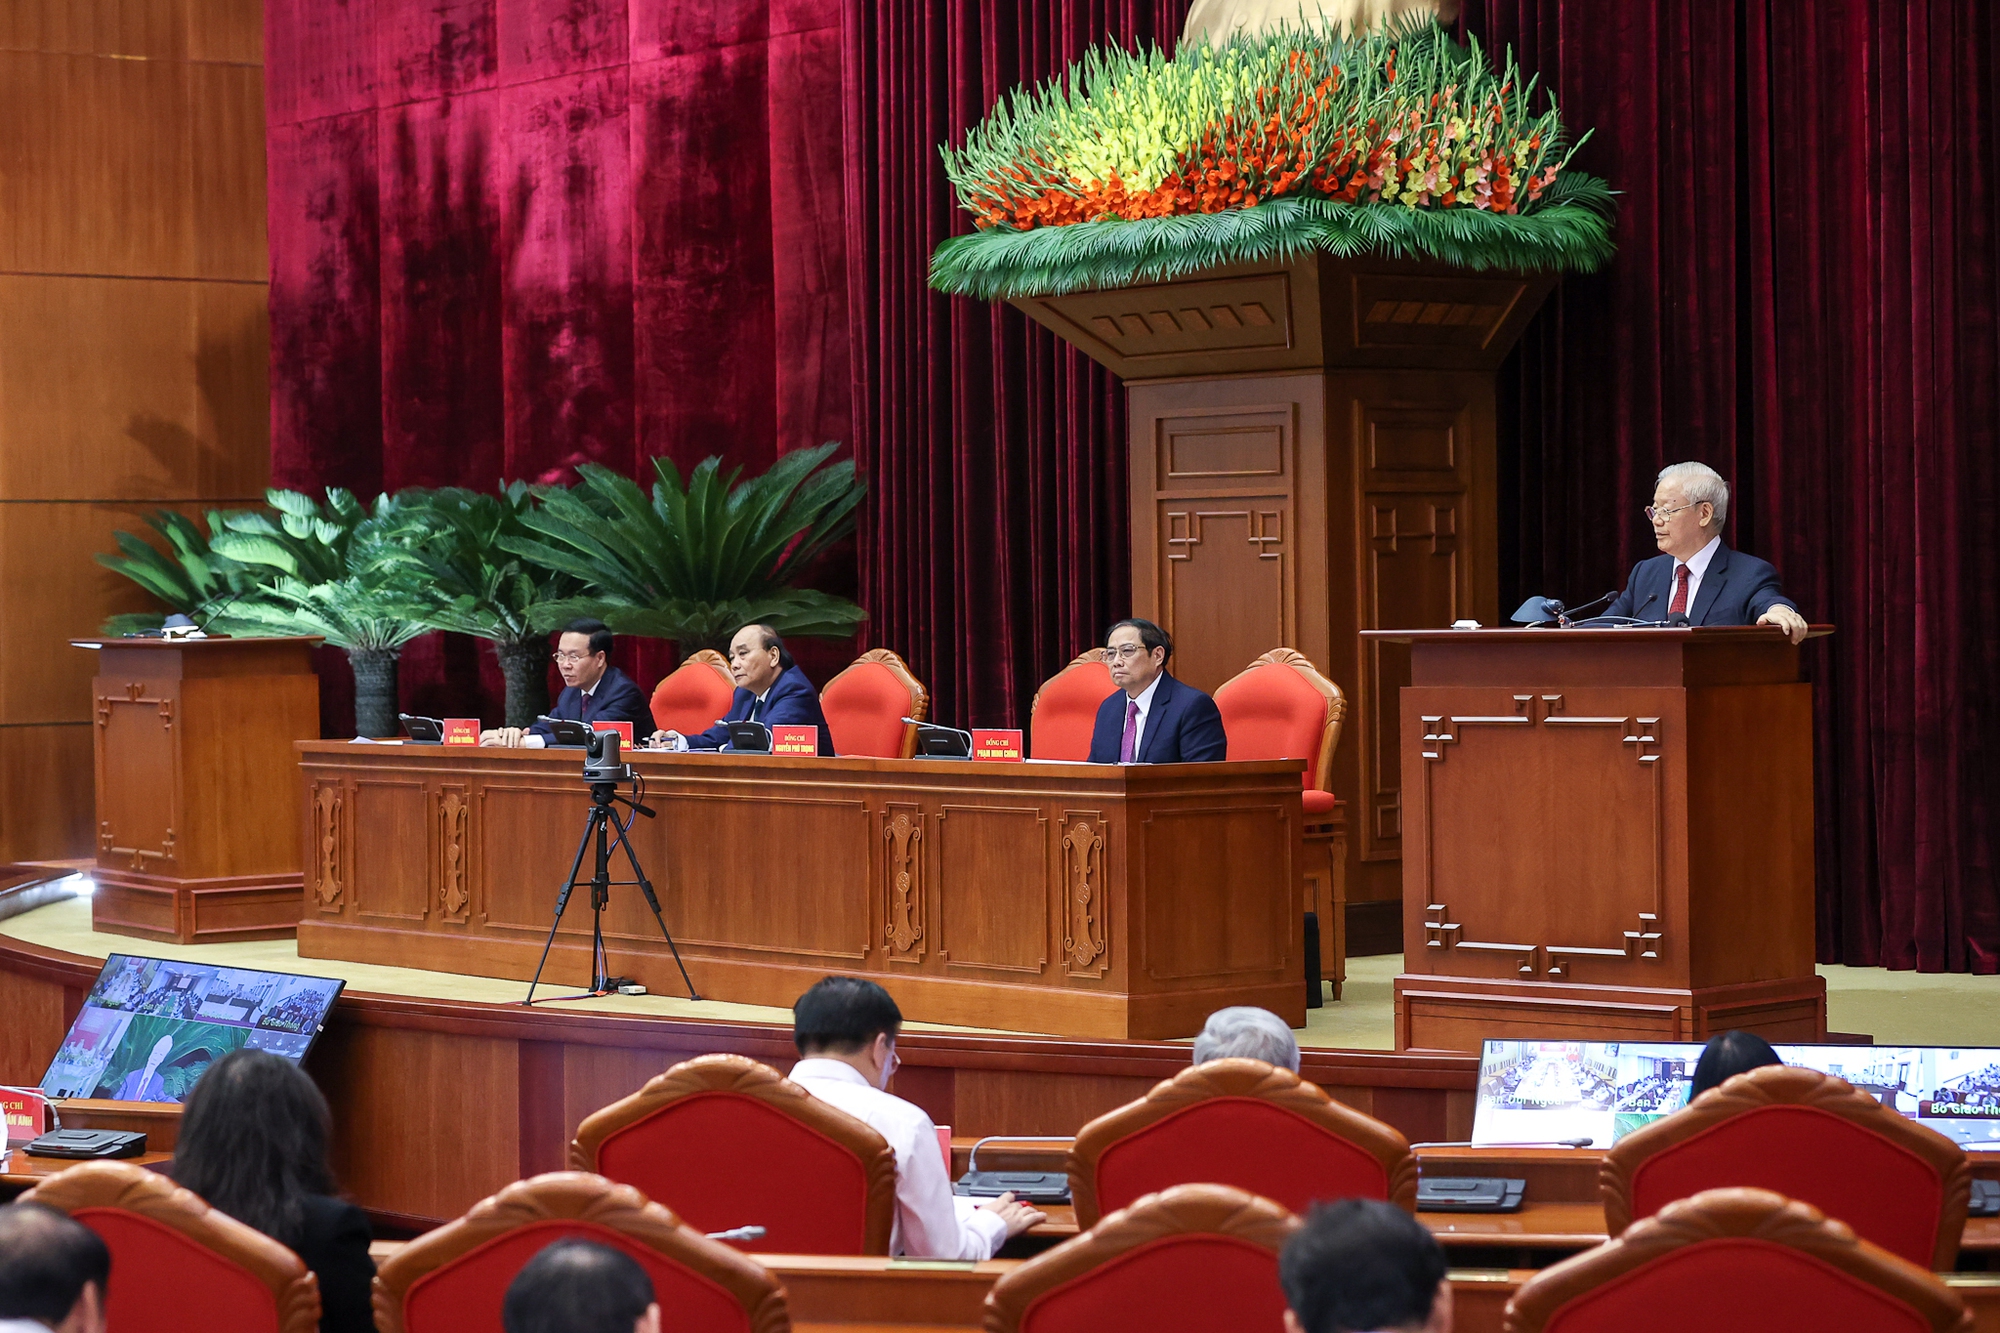 TOÀN VĂN: Phát biểu của Tổng Bí thư Nguyễn Phú Trọng tại Hội nghị triển khai Nghị quyết số 30-NQ/TW về phát triển vùng Đồng bằng sông Hồng - Ảnh 2.